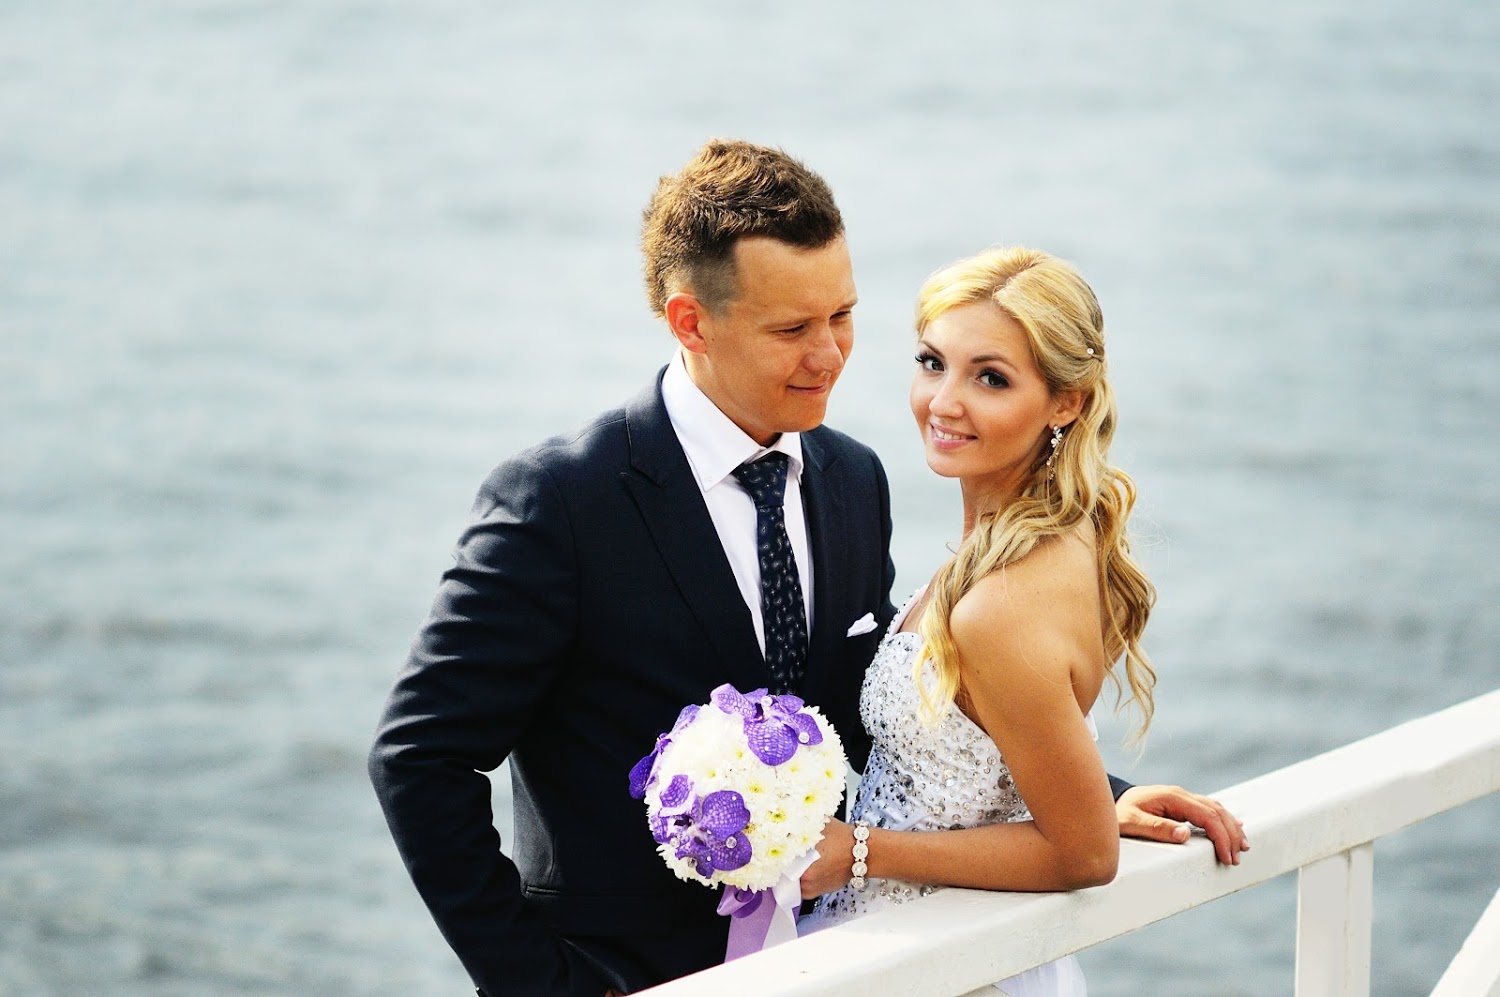 Свадебная фотосессия на воде, Морская свадьба, свадебный фотограф, фотосессия на воде